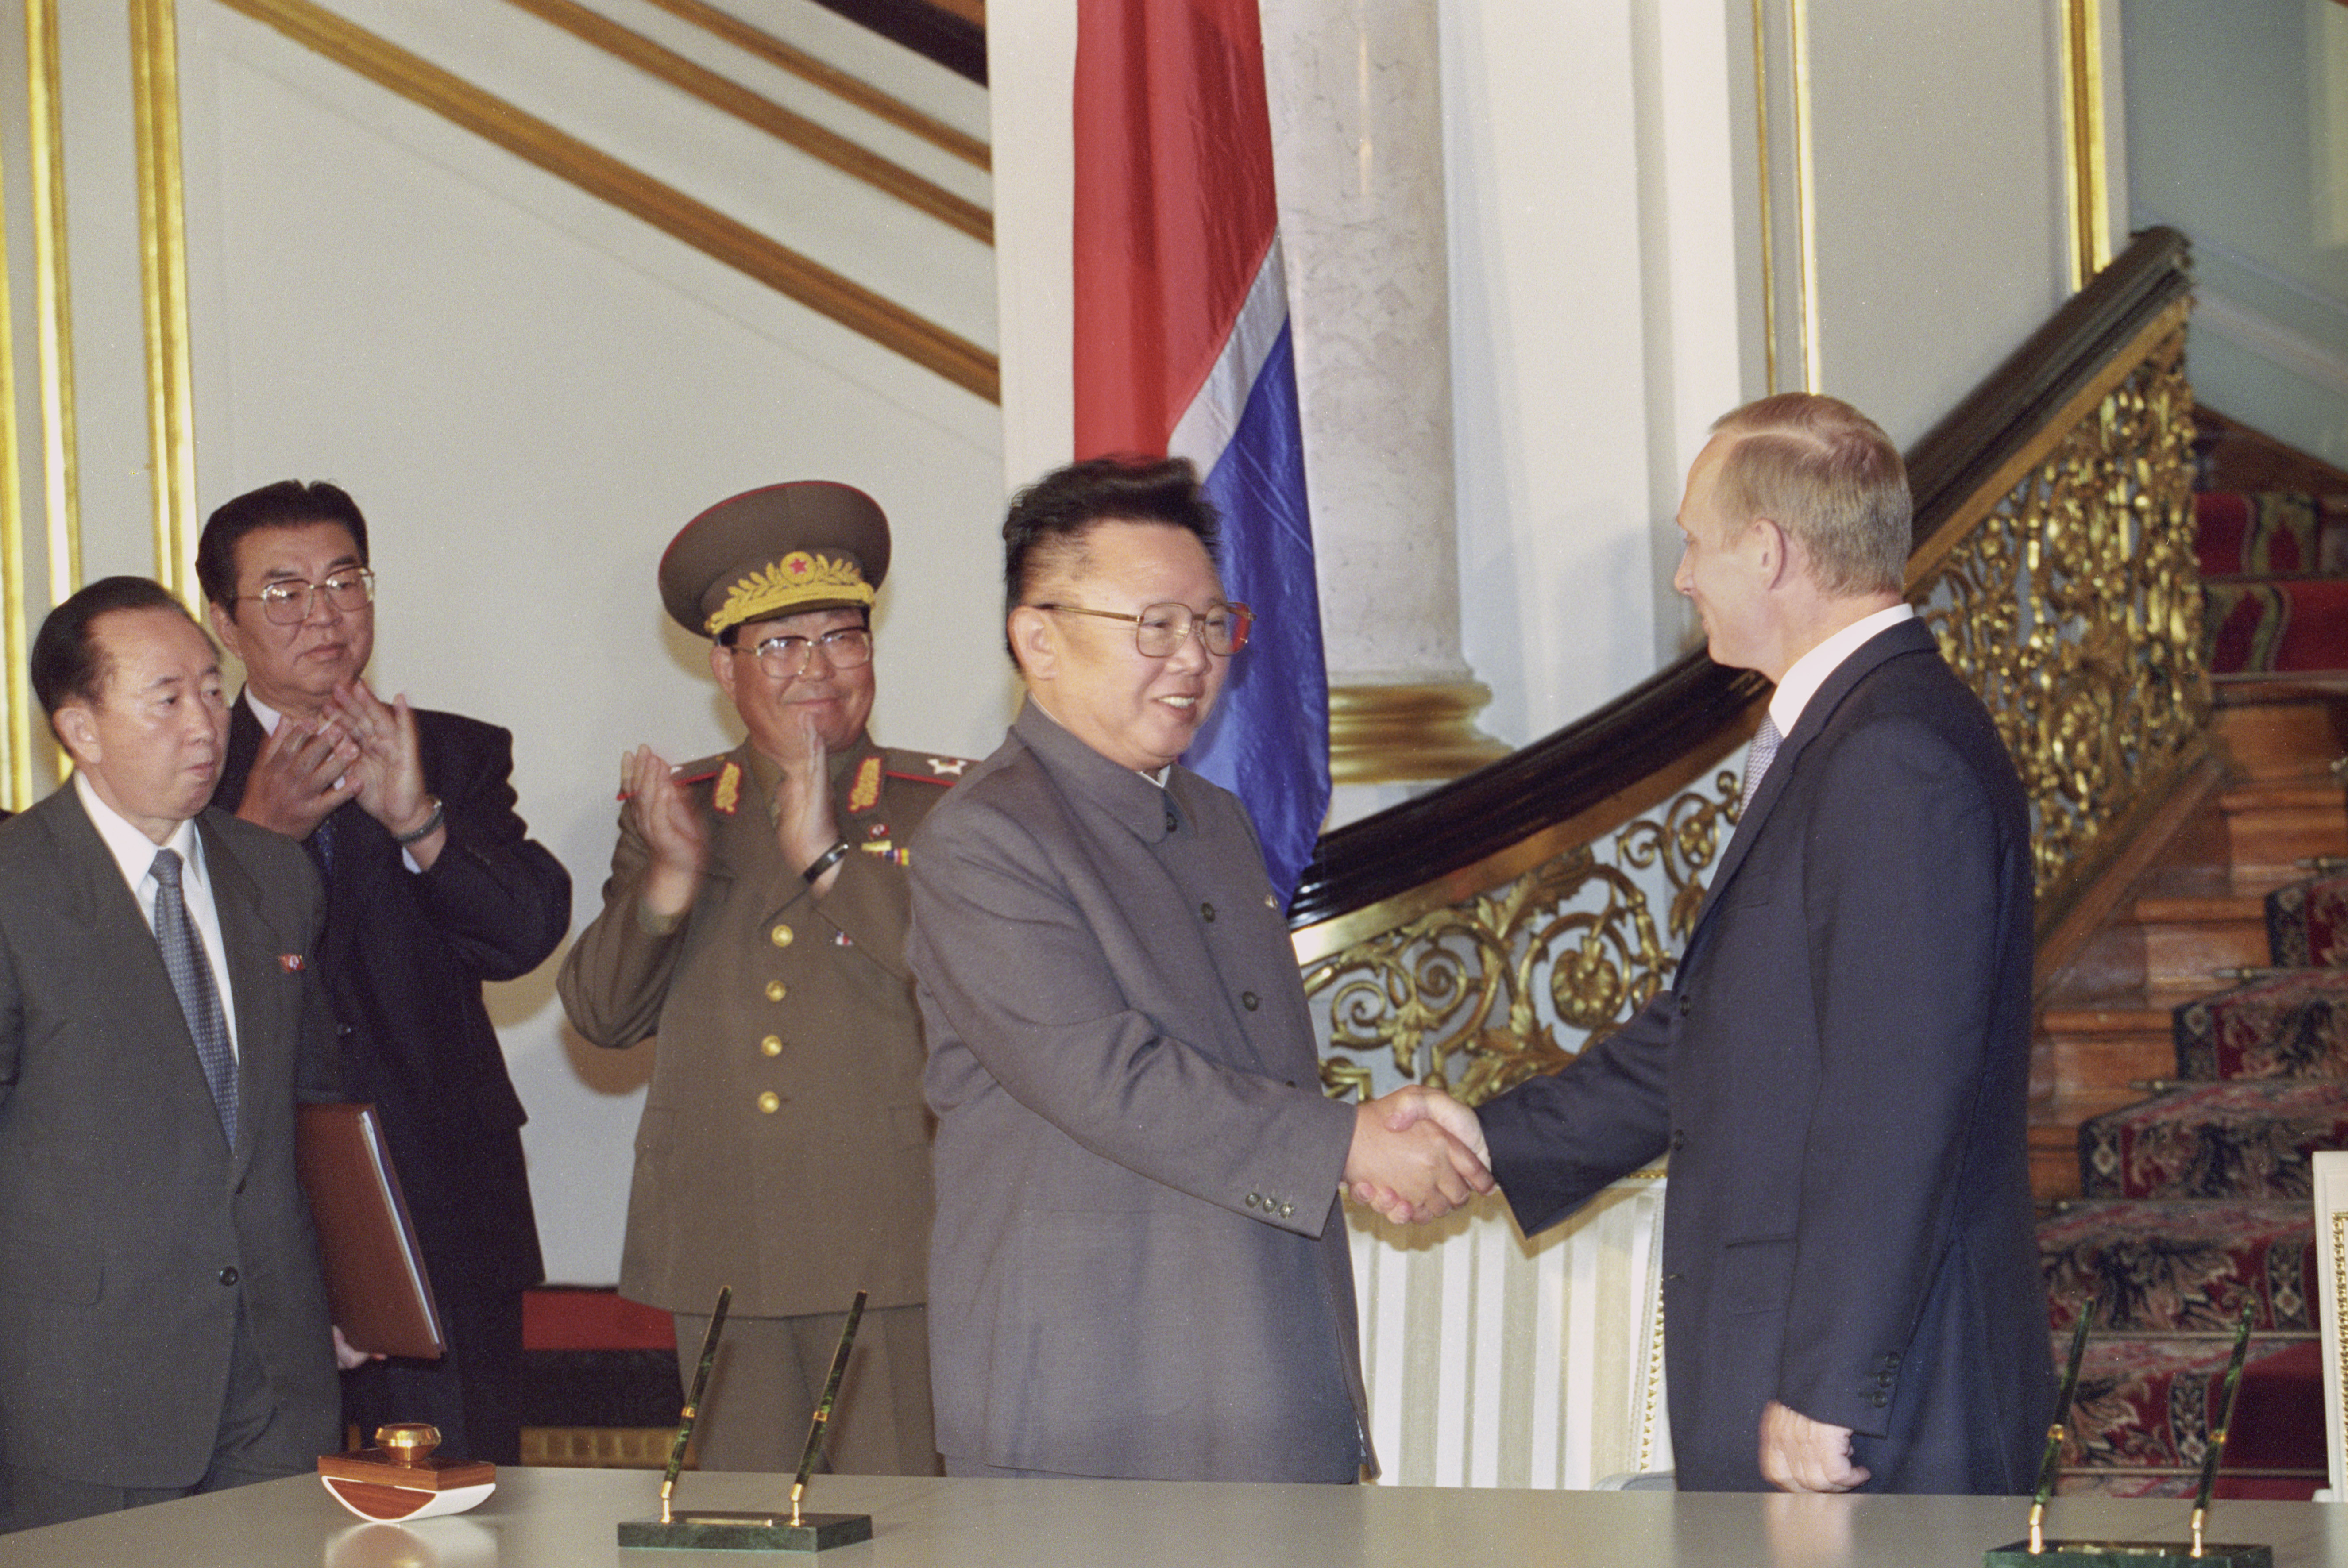 Руководитель КНДР Ким Чен Ир и президент России Владимир Путин (справа) во время втречи в Кремле в 2001 году
Фото:&nbsp;&copy;&nbsp;РИА Новости/Владимир Вяткин